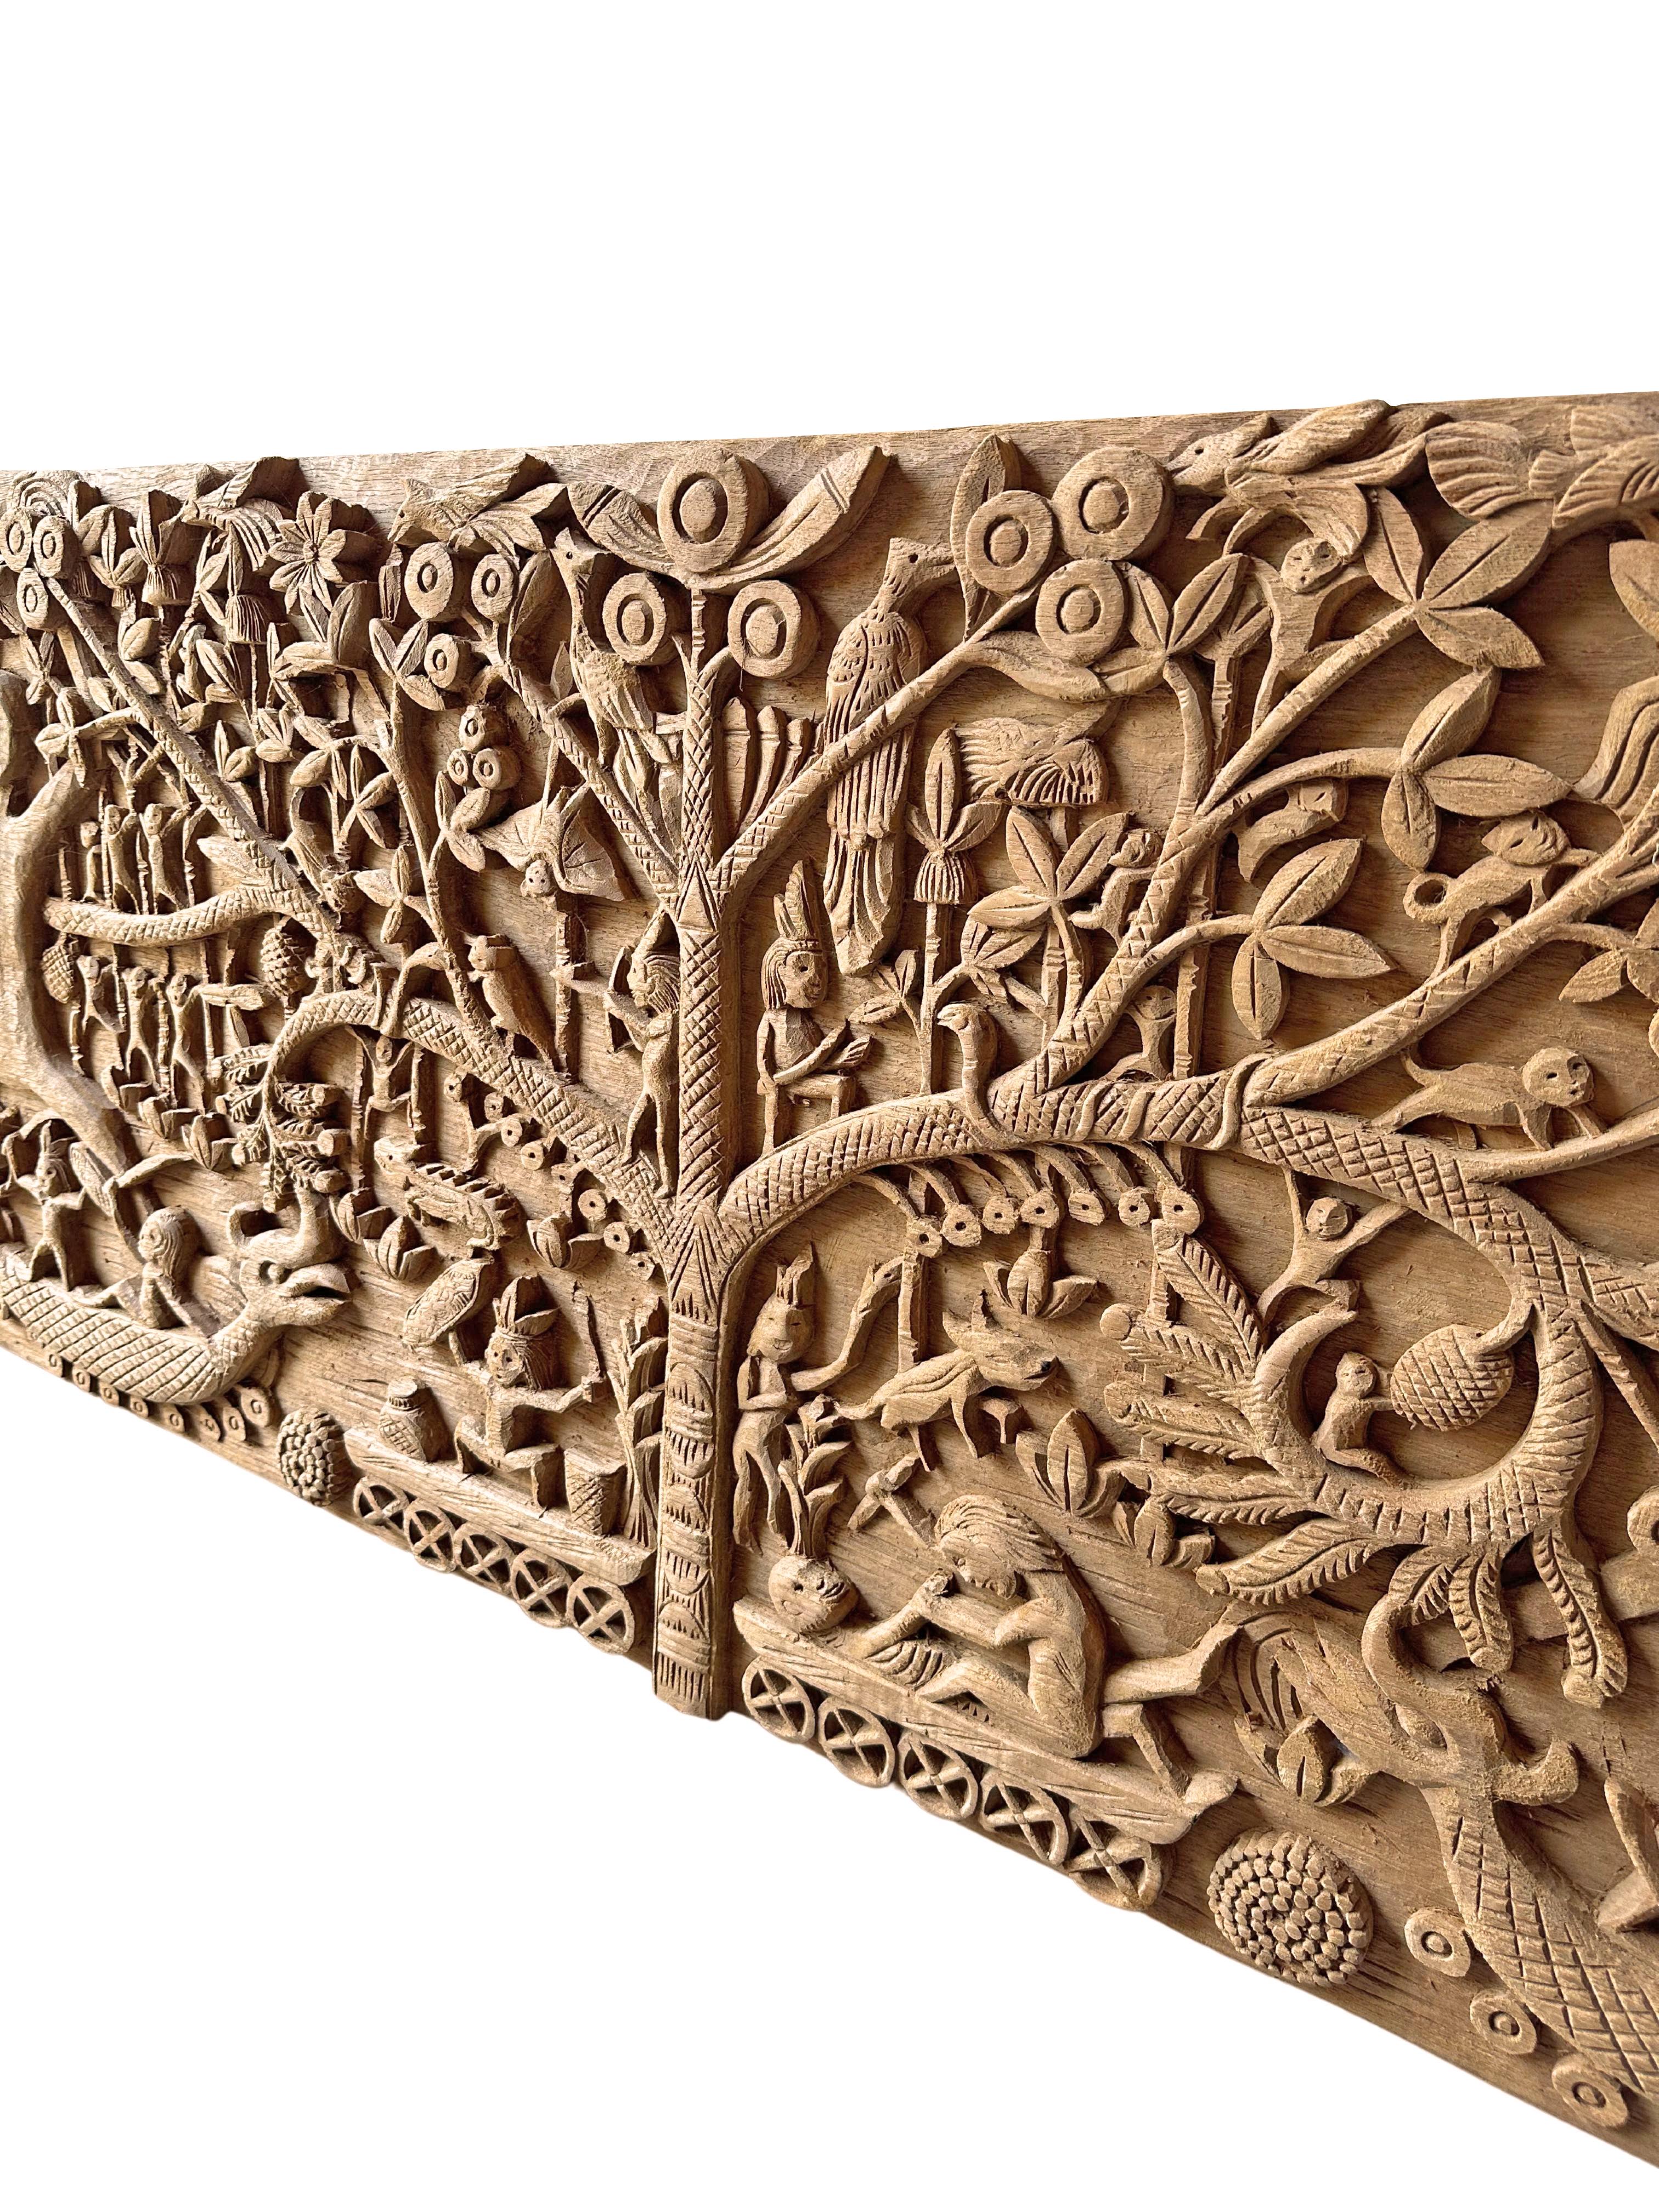 Hand-Carved Teak Wood Sculpture Panel Depicting Dayak Mythology For Sale 2